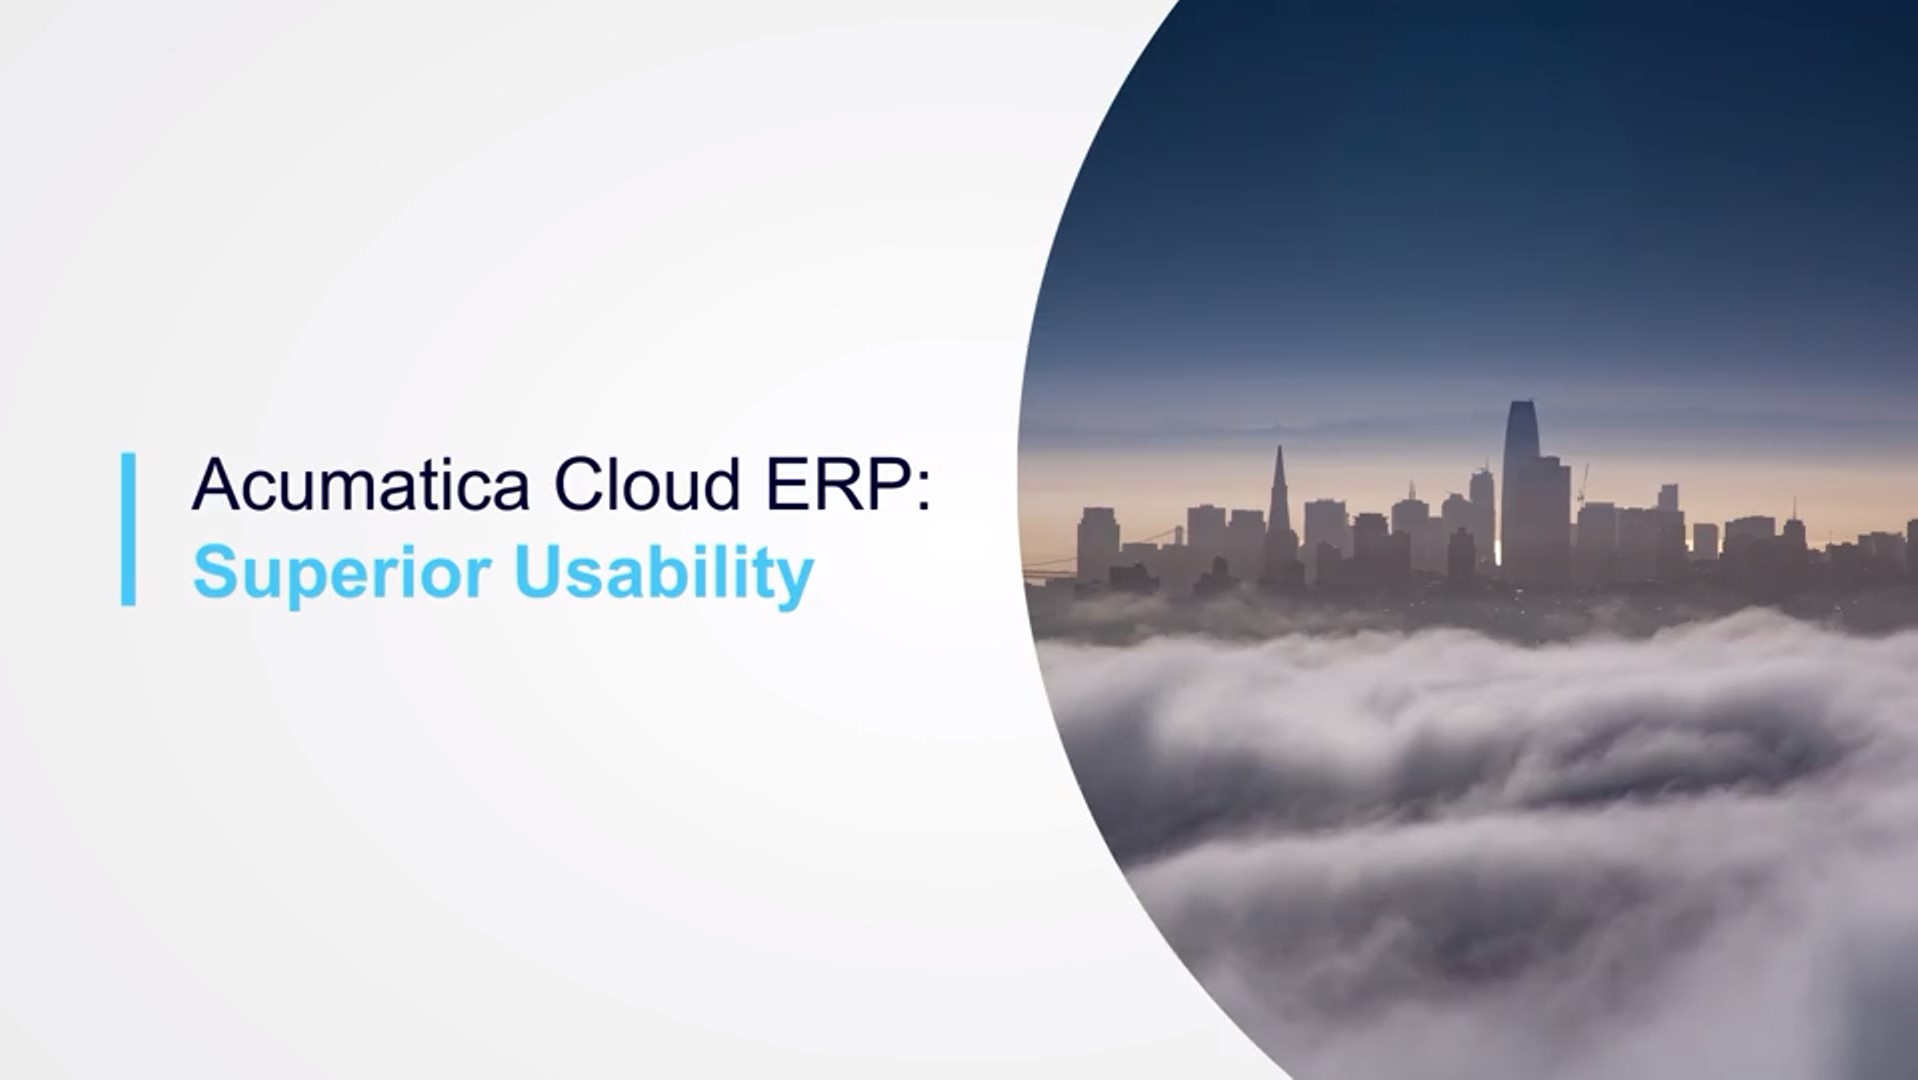 Une facilité d'utilisation supérieure avec Acumatica Cloud ERP